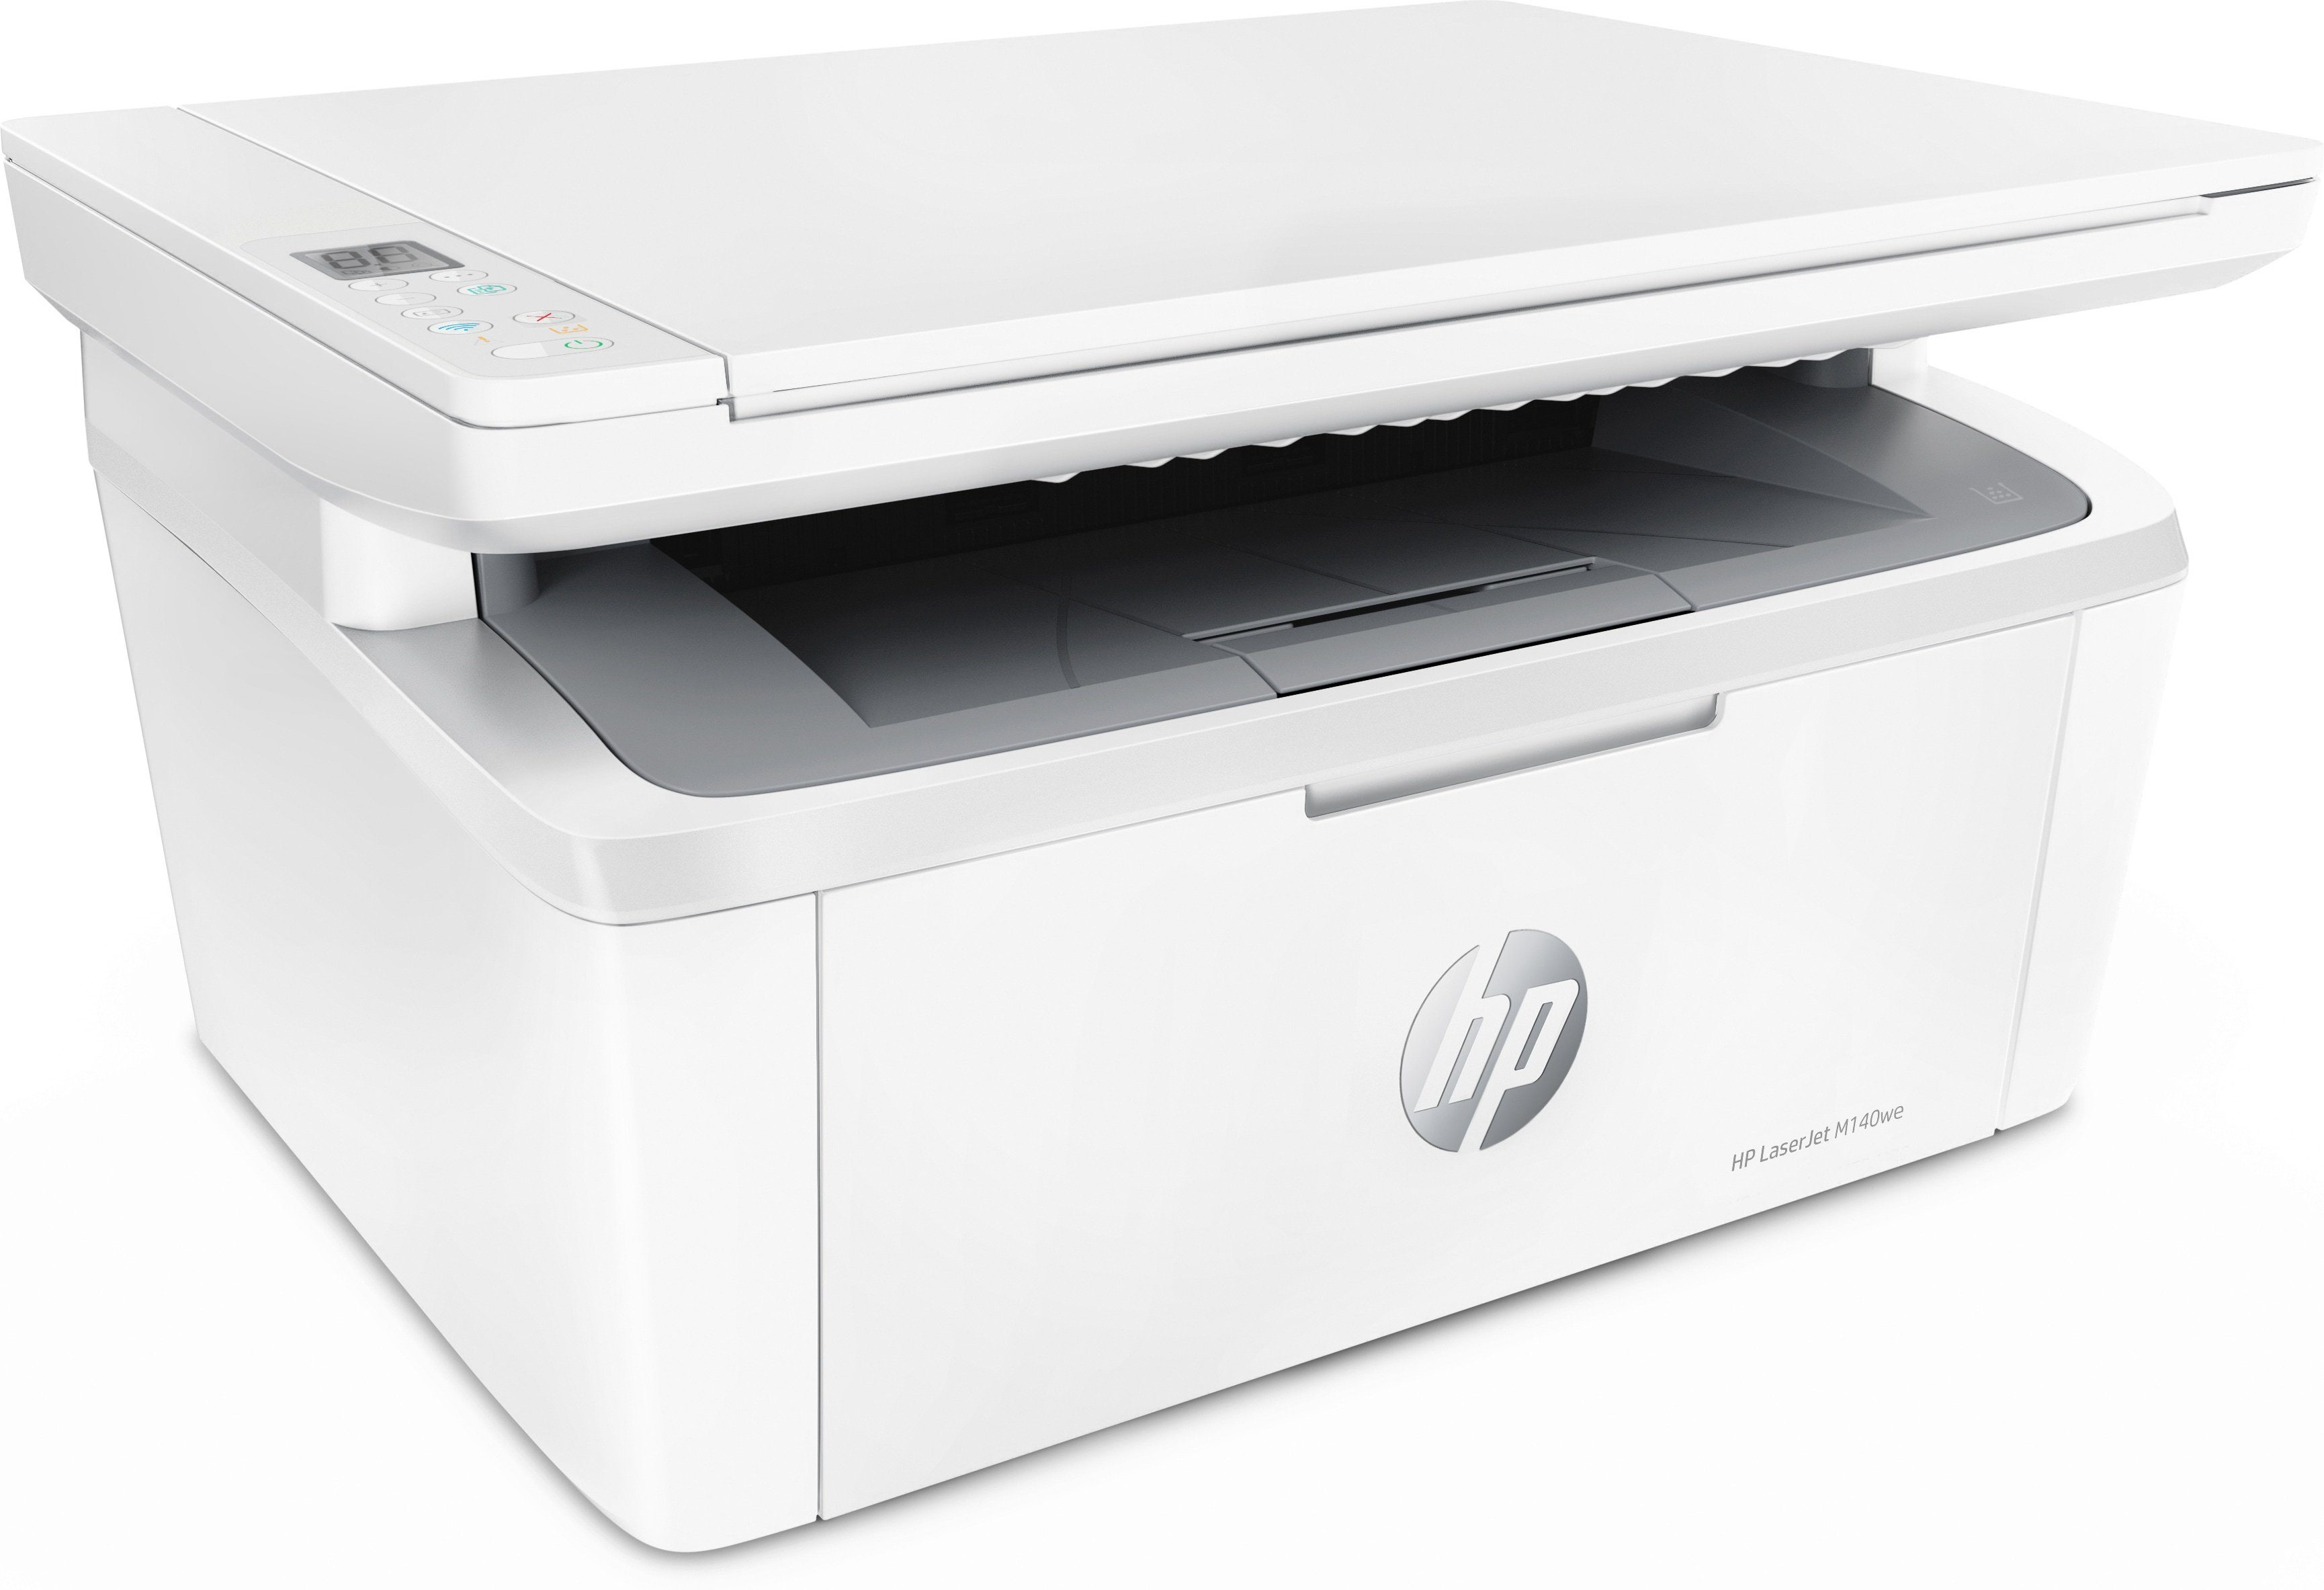 HP LaserJet Drucker MFP WLAN HP+ (Bluetooth, Instant Multifunktionsdrucker, Ink (Wi-Fi), M140we kompatibel)